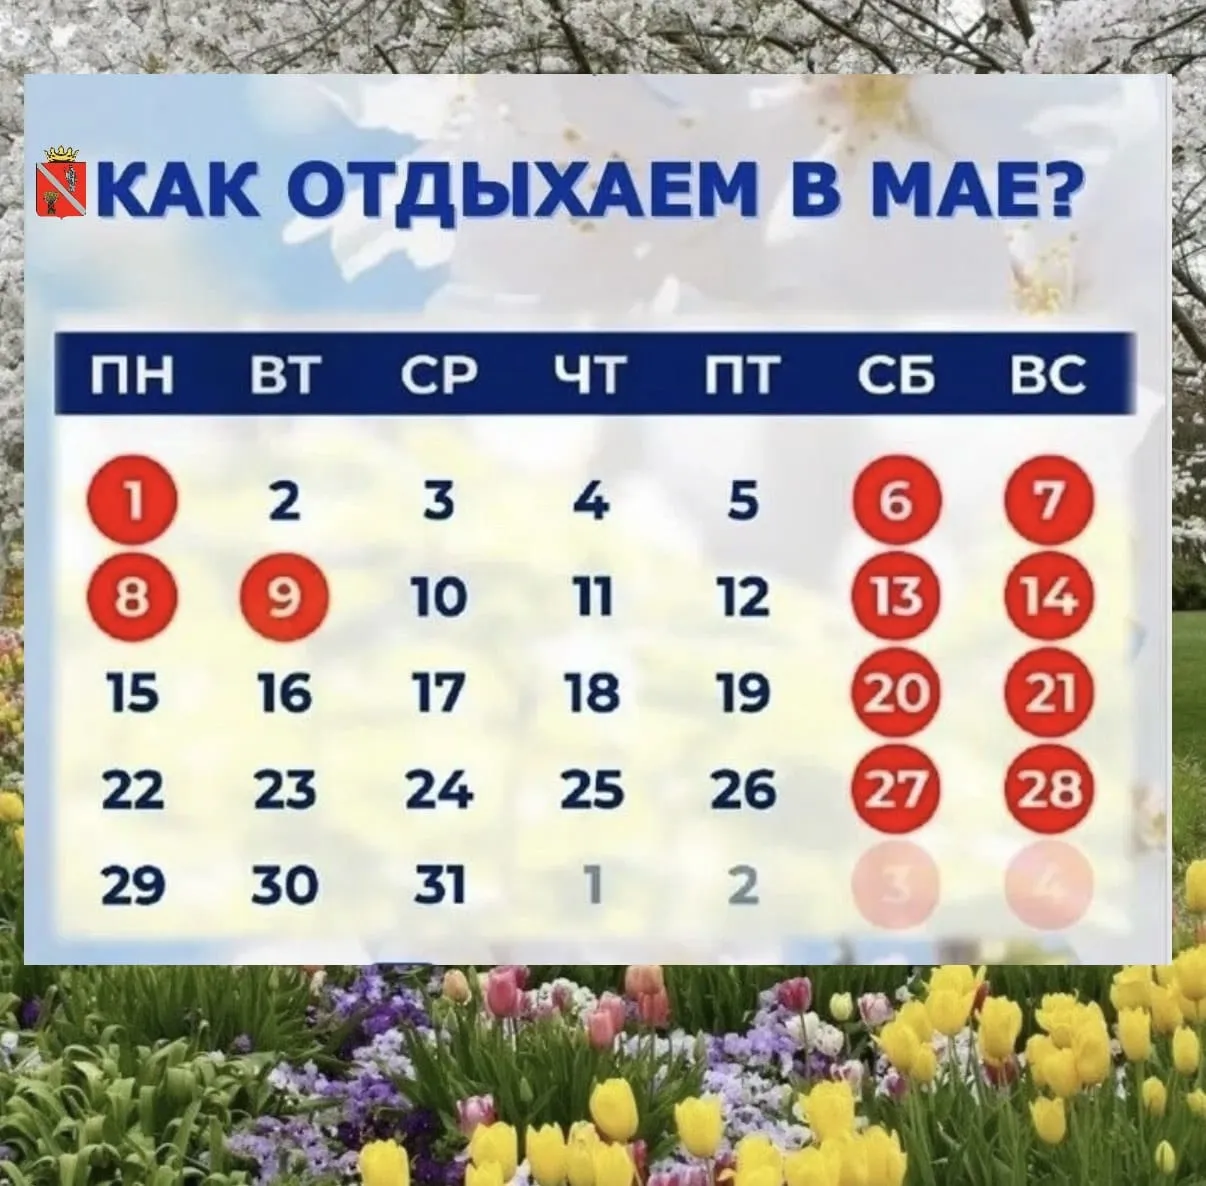 Выходные дни на майские праздники в россии